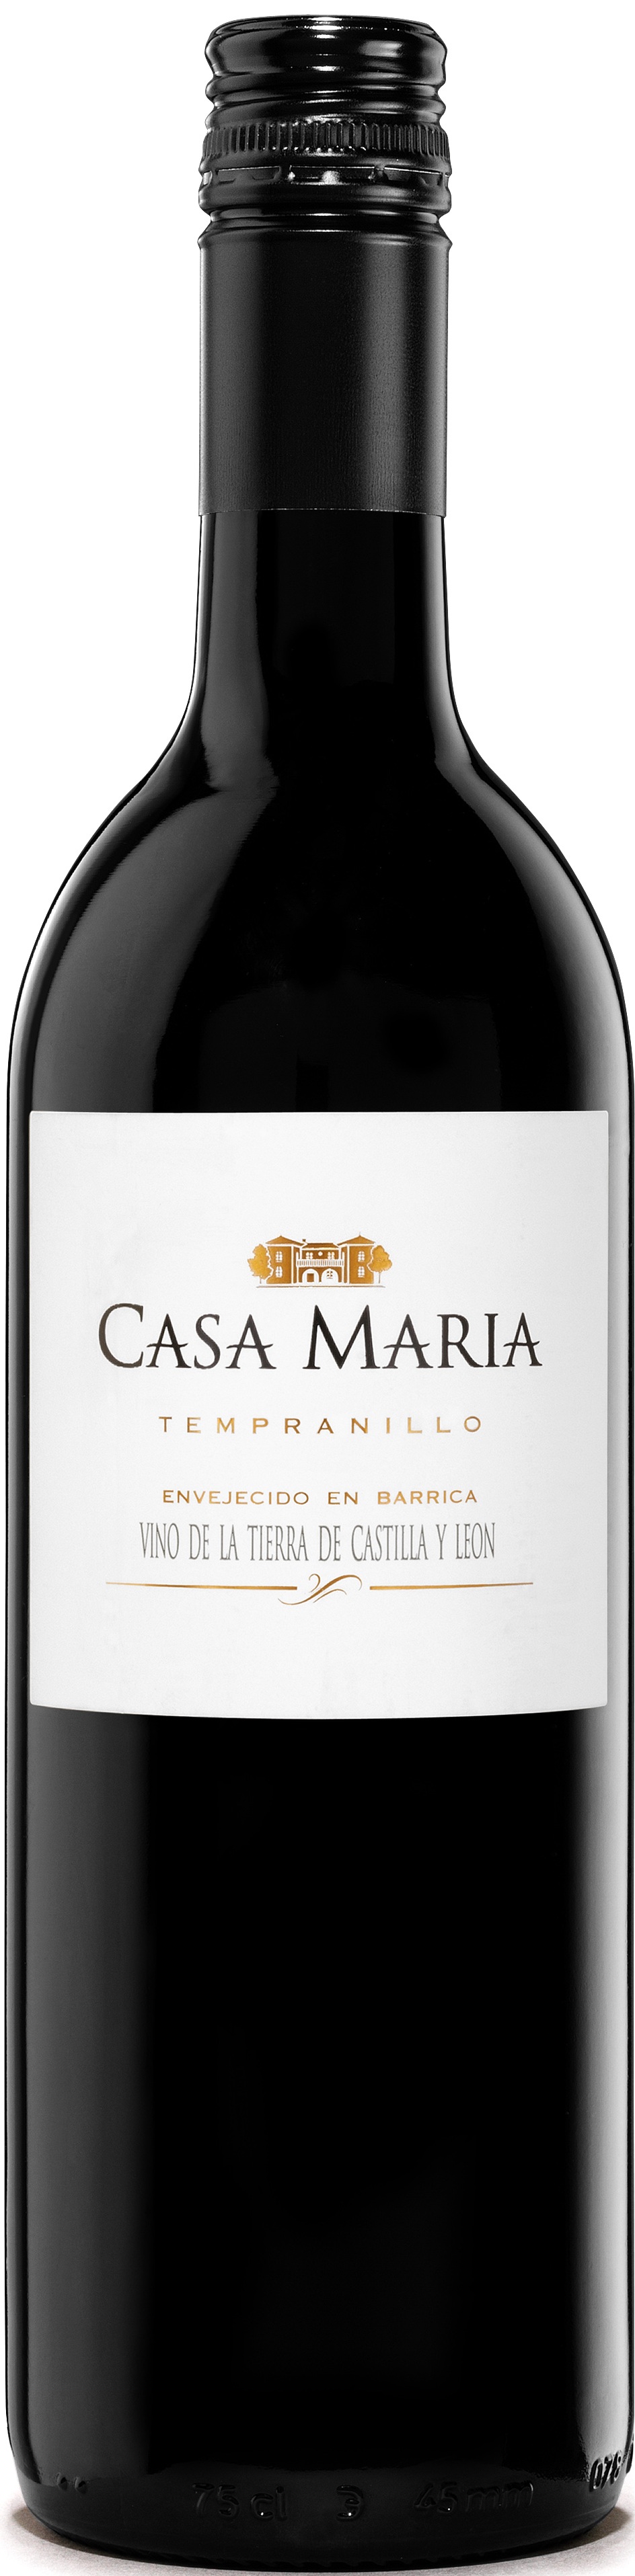 Imagen de la botella de Vino Casa María Roble